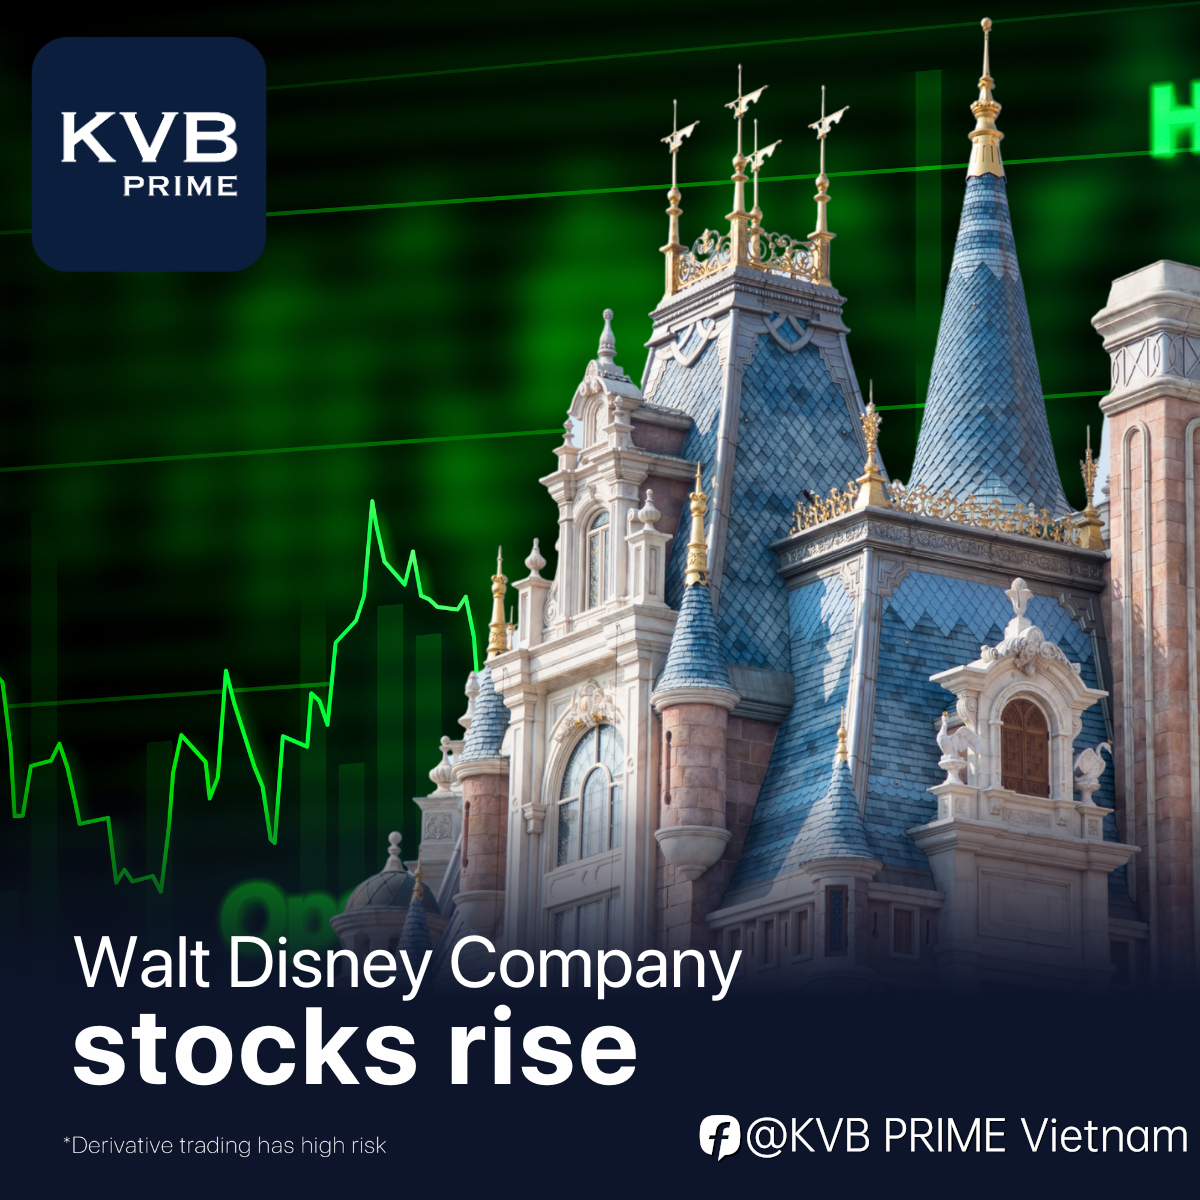 Cổ phiếu của Công ty Walt Disney tăng